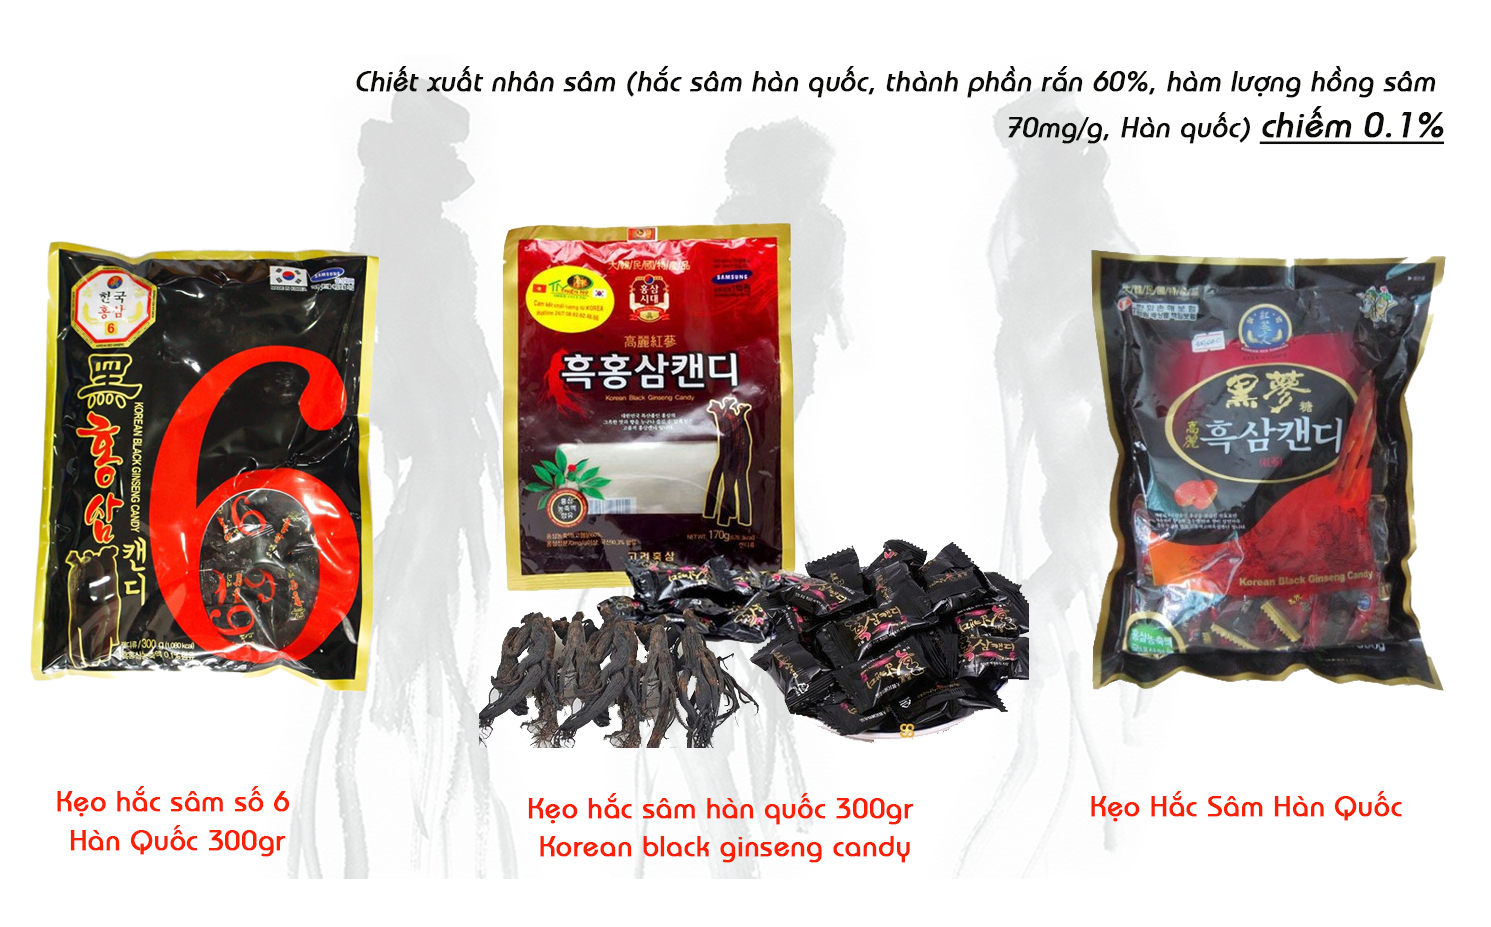 keo-sam-den-han-quoc-korean-black-ginseng-candy-2